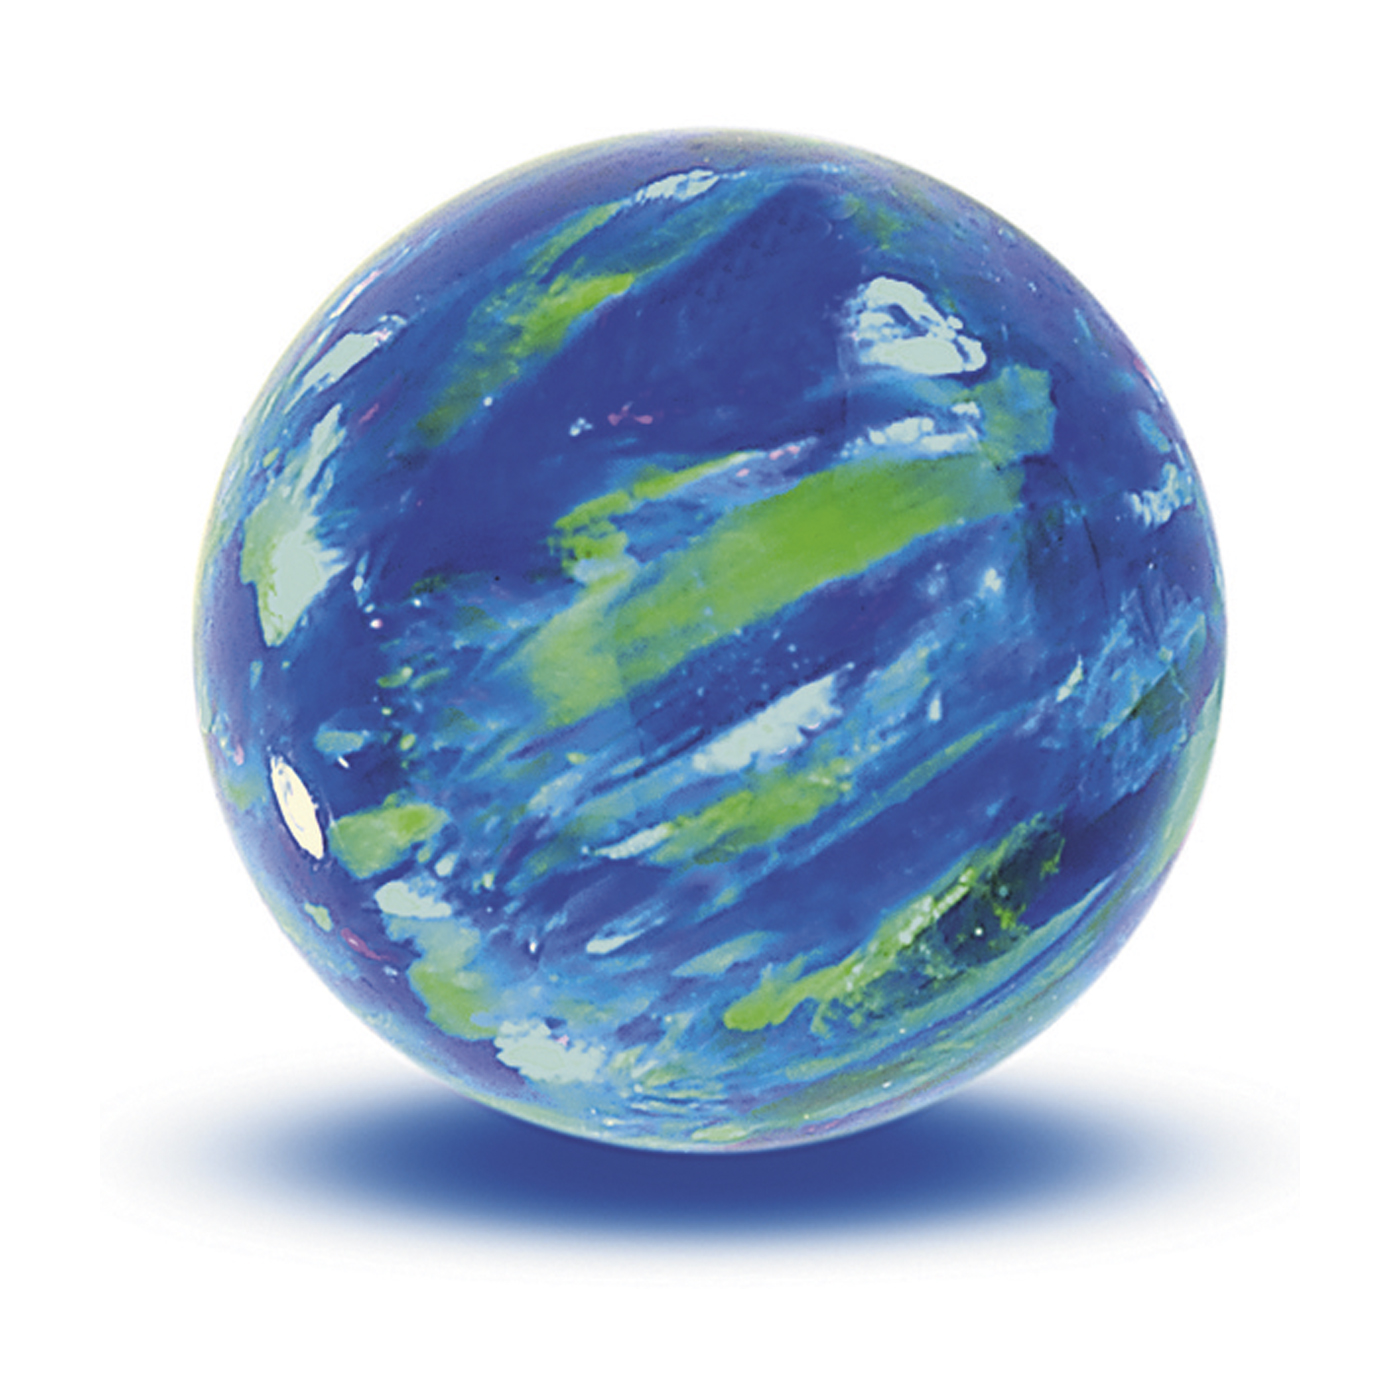 Opal Imitation Ball, Cyan, ø 4 mm, Spot Drilled - 1 piece